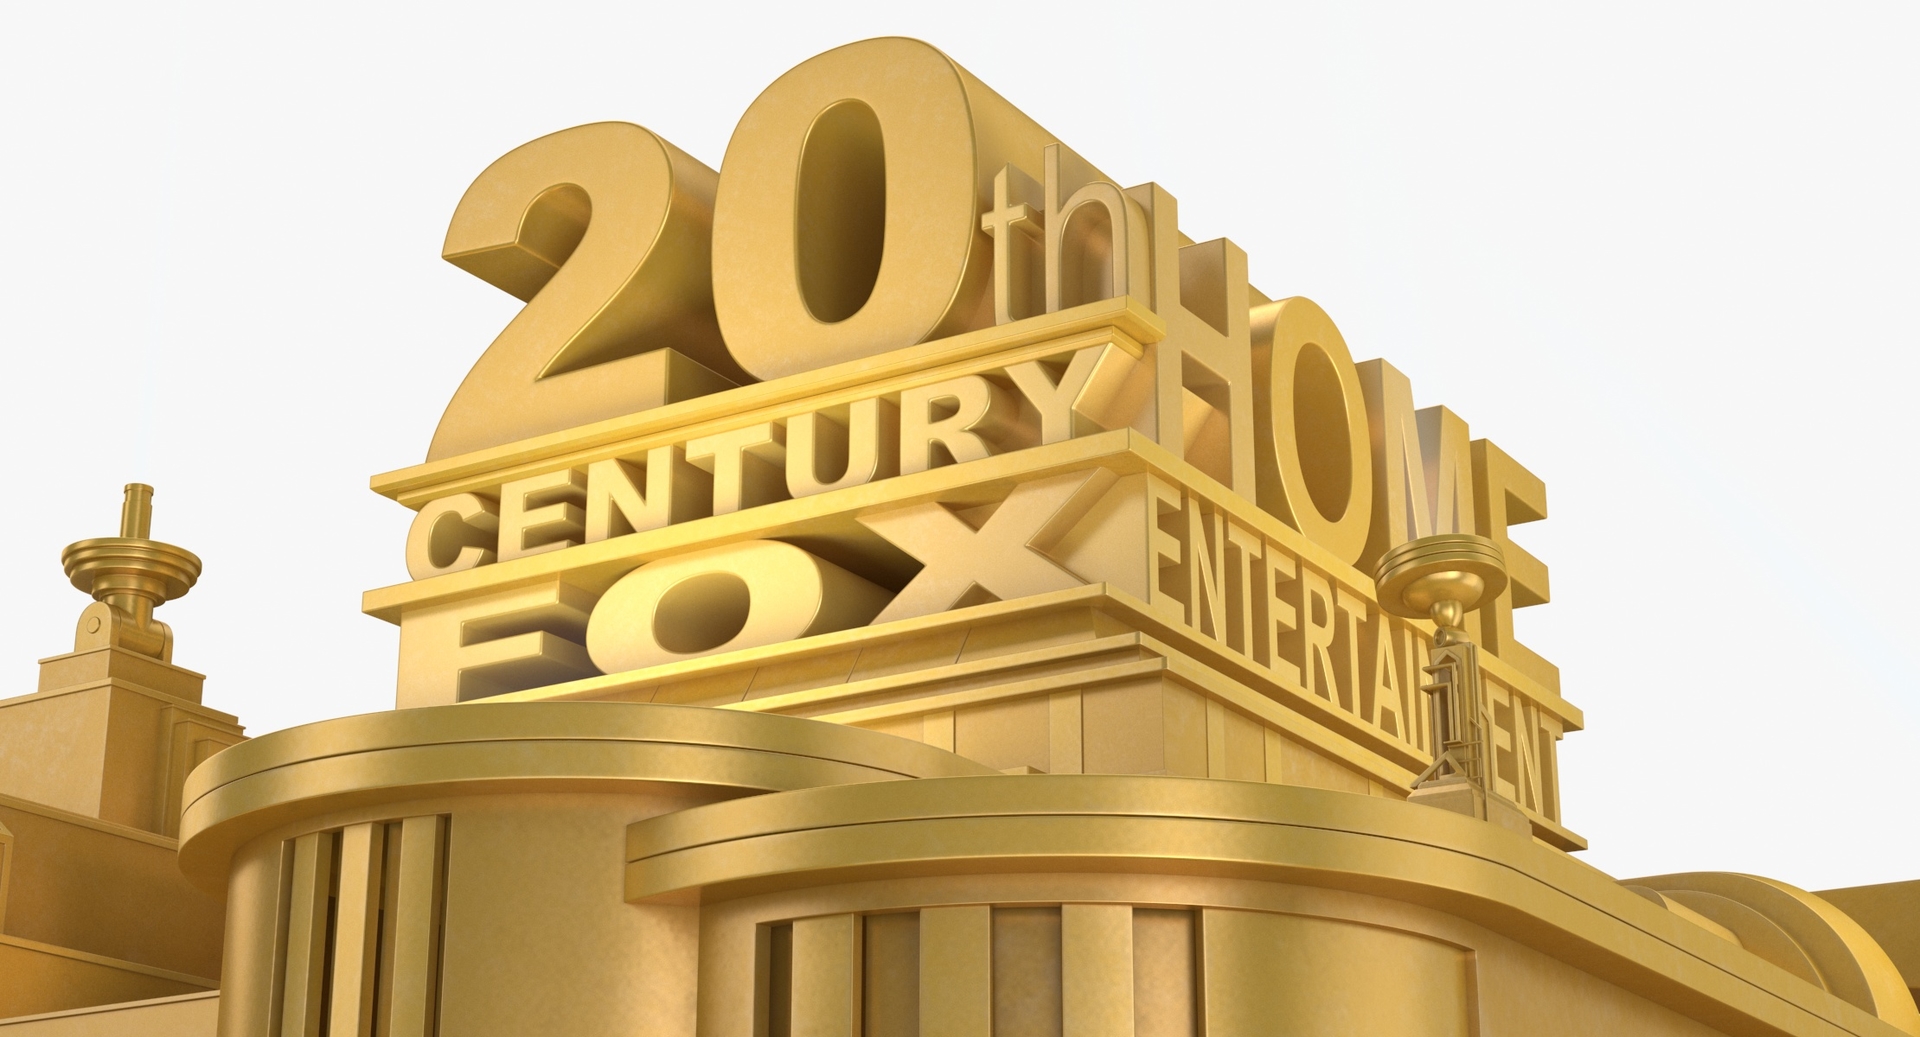 20th century fox studios tour